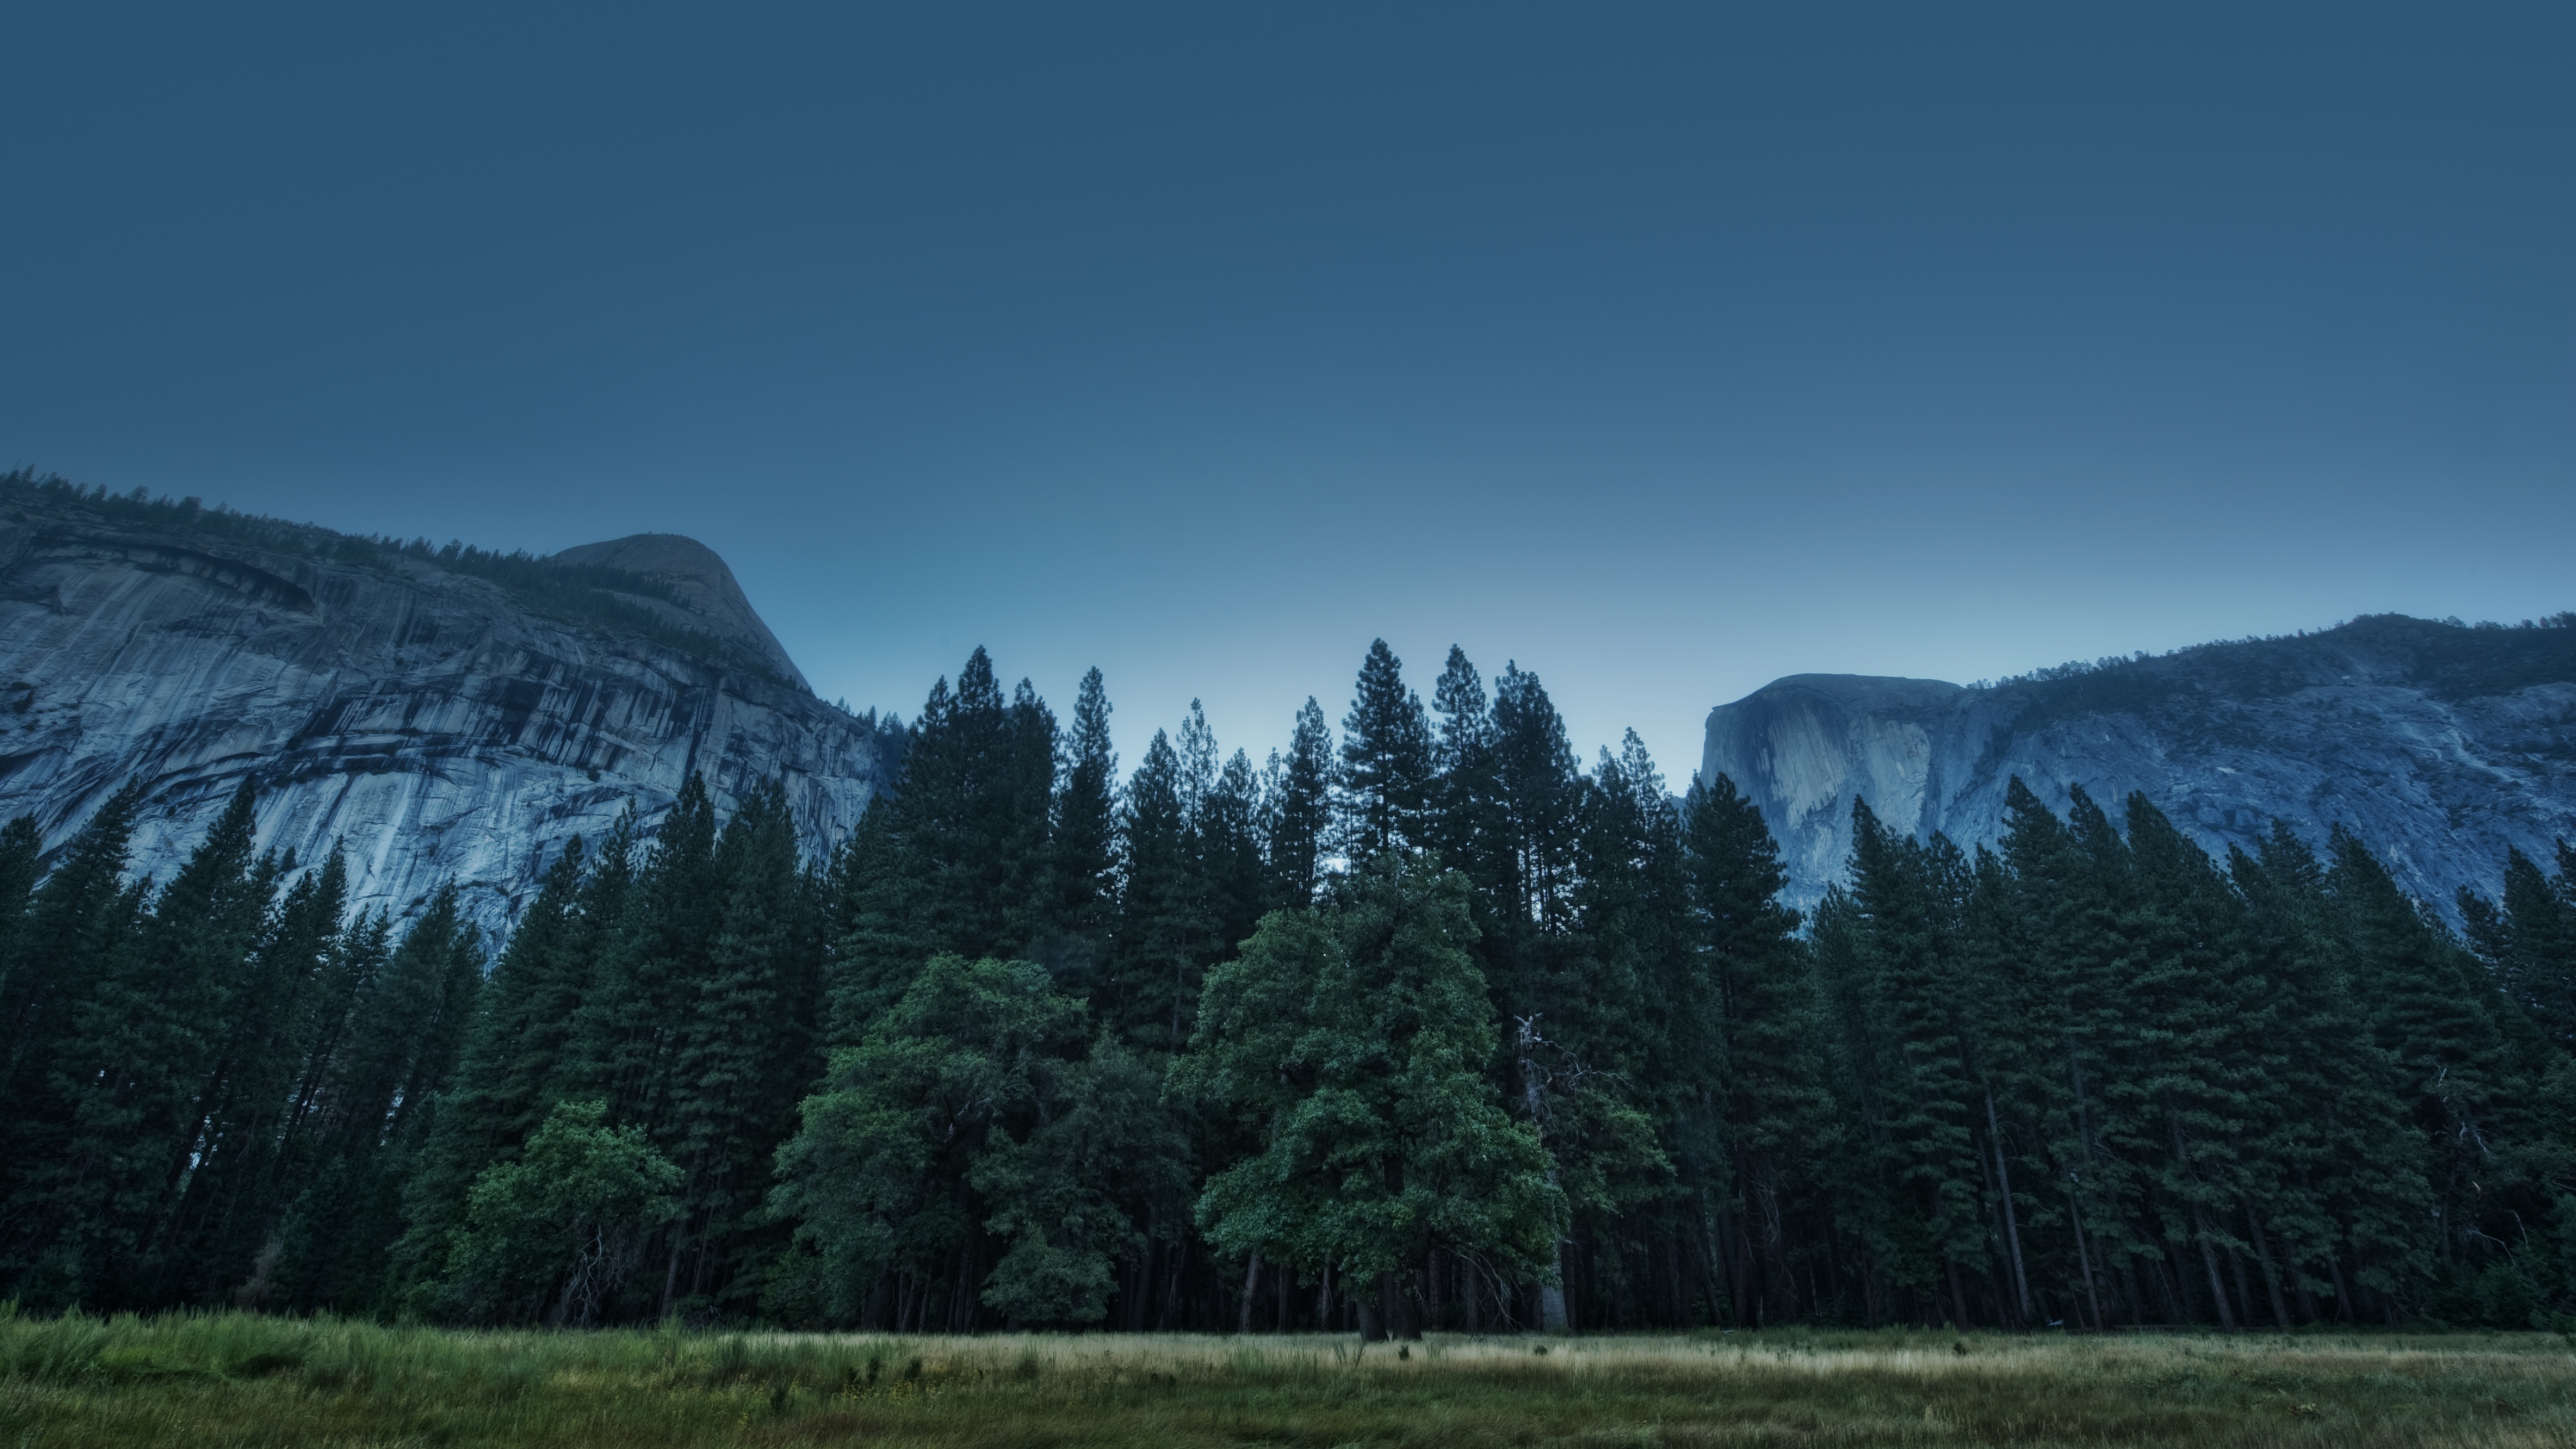 Hình nền Yosemite đẹp lung linh sẽ khiến bạn đắm chìm trong vẻ đẹp tự nhiên hùng vĩ của công viên quốc gia này. Hãy chọn hình nền này để mang lại nét đẹp hoang sơ, không gian yên tĩnh cho màn hình của bạn.